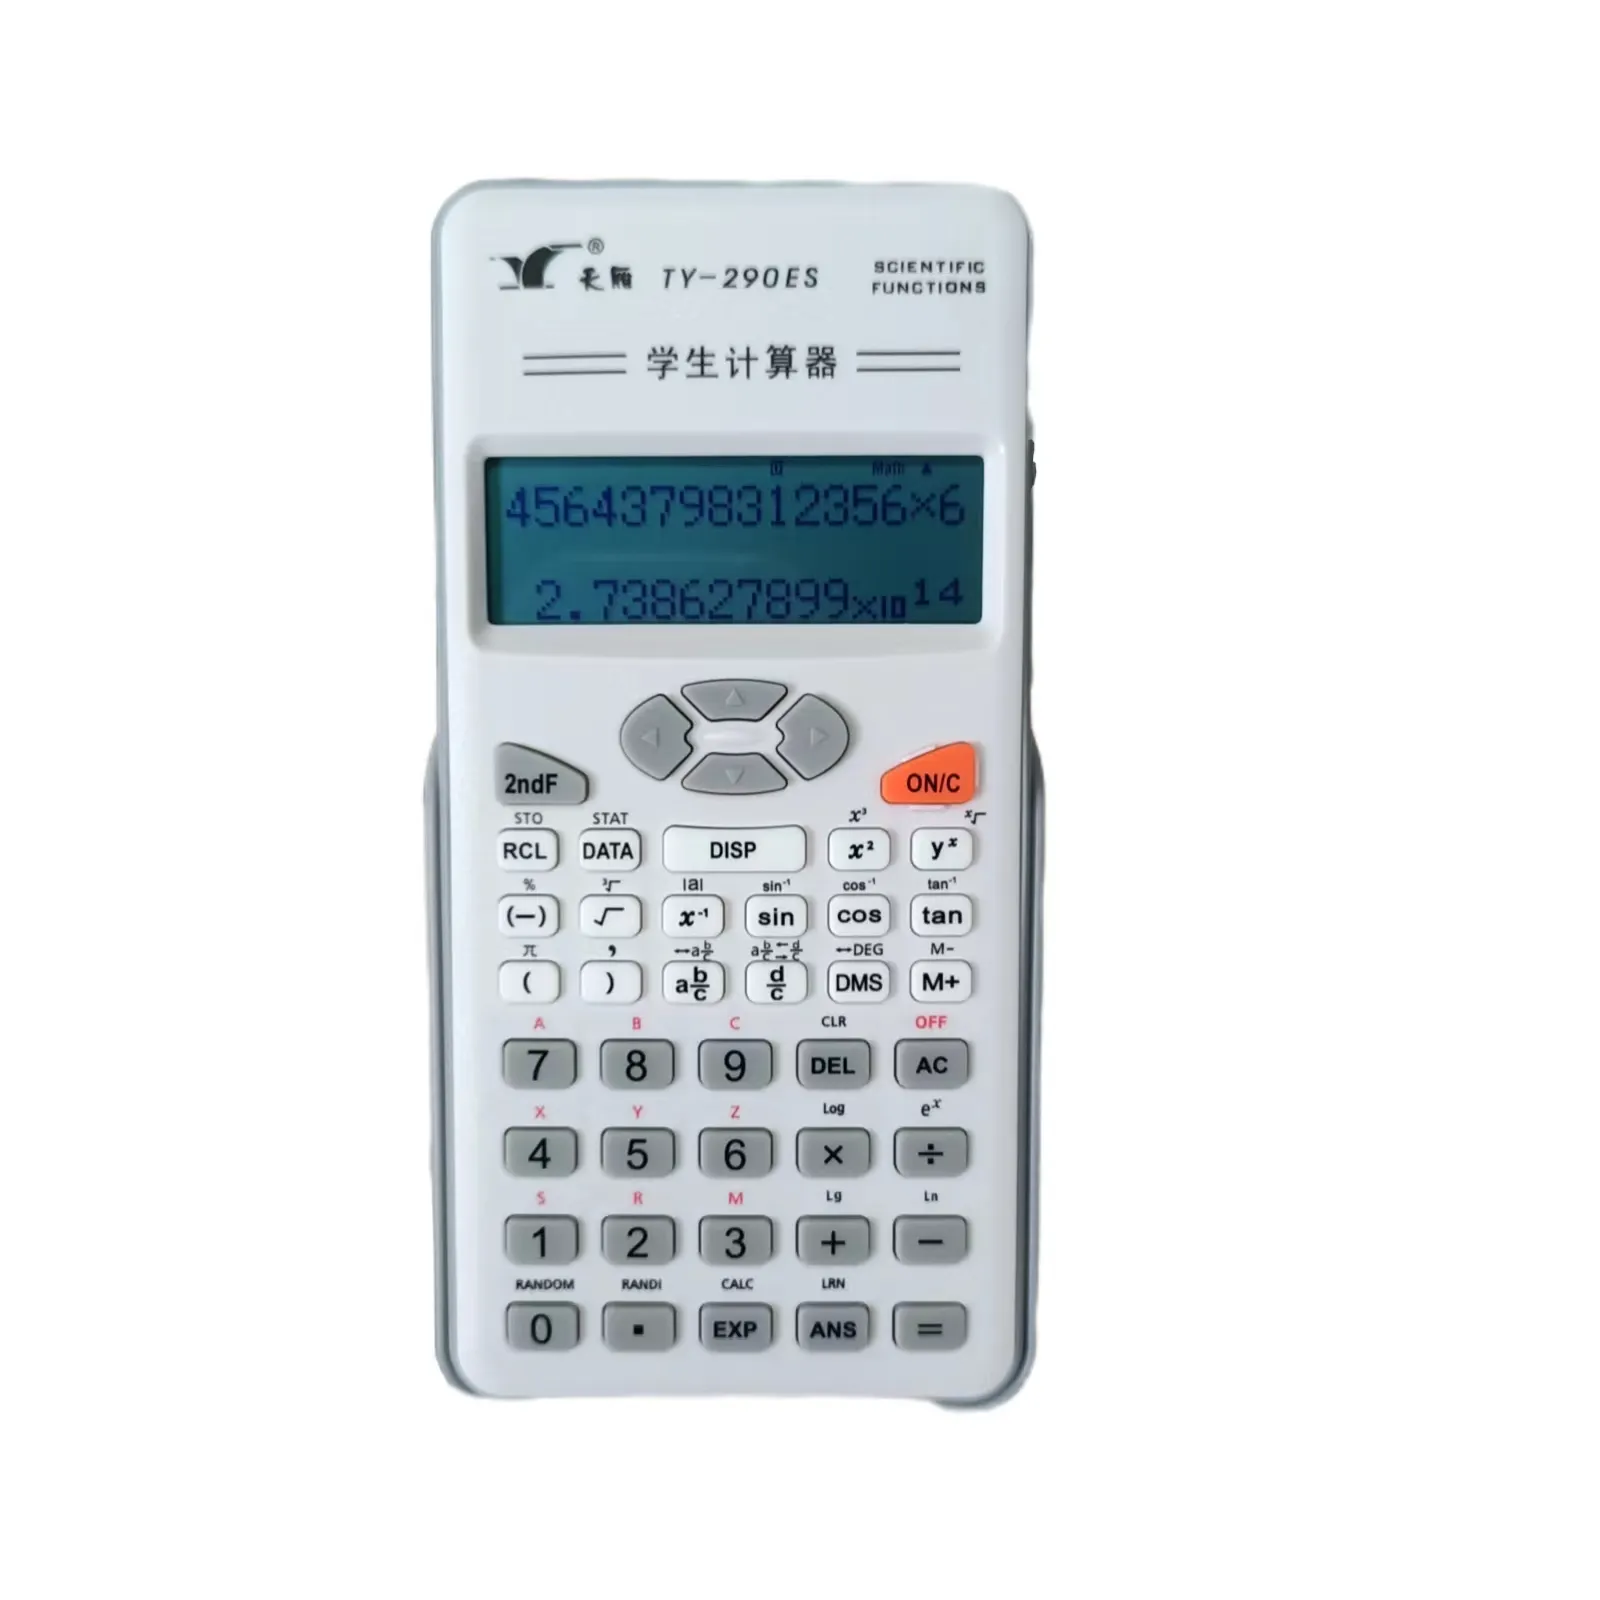 96*31 Dot Matrix Display Middelbare School Studie Calculator Aaa * 2 Batterij Wetenschappelijke Rekenmachine